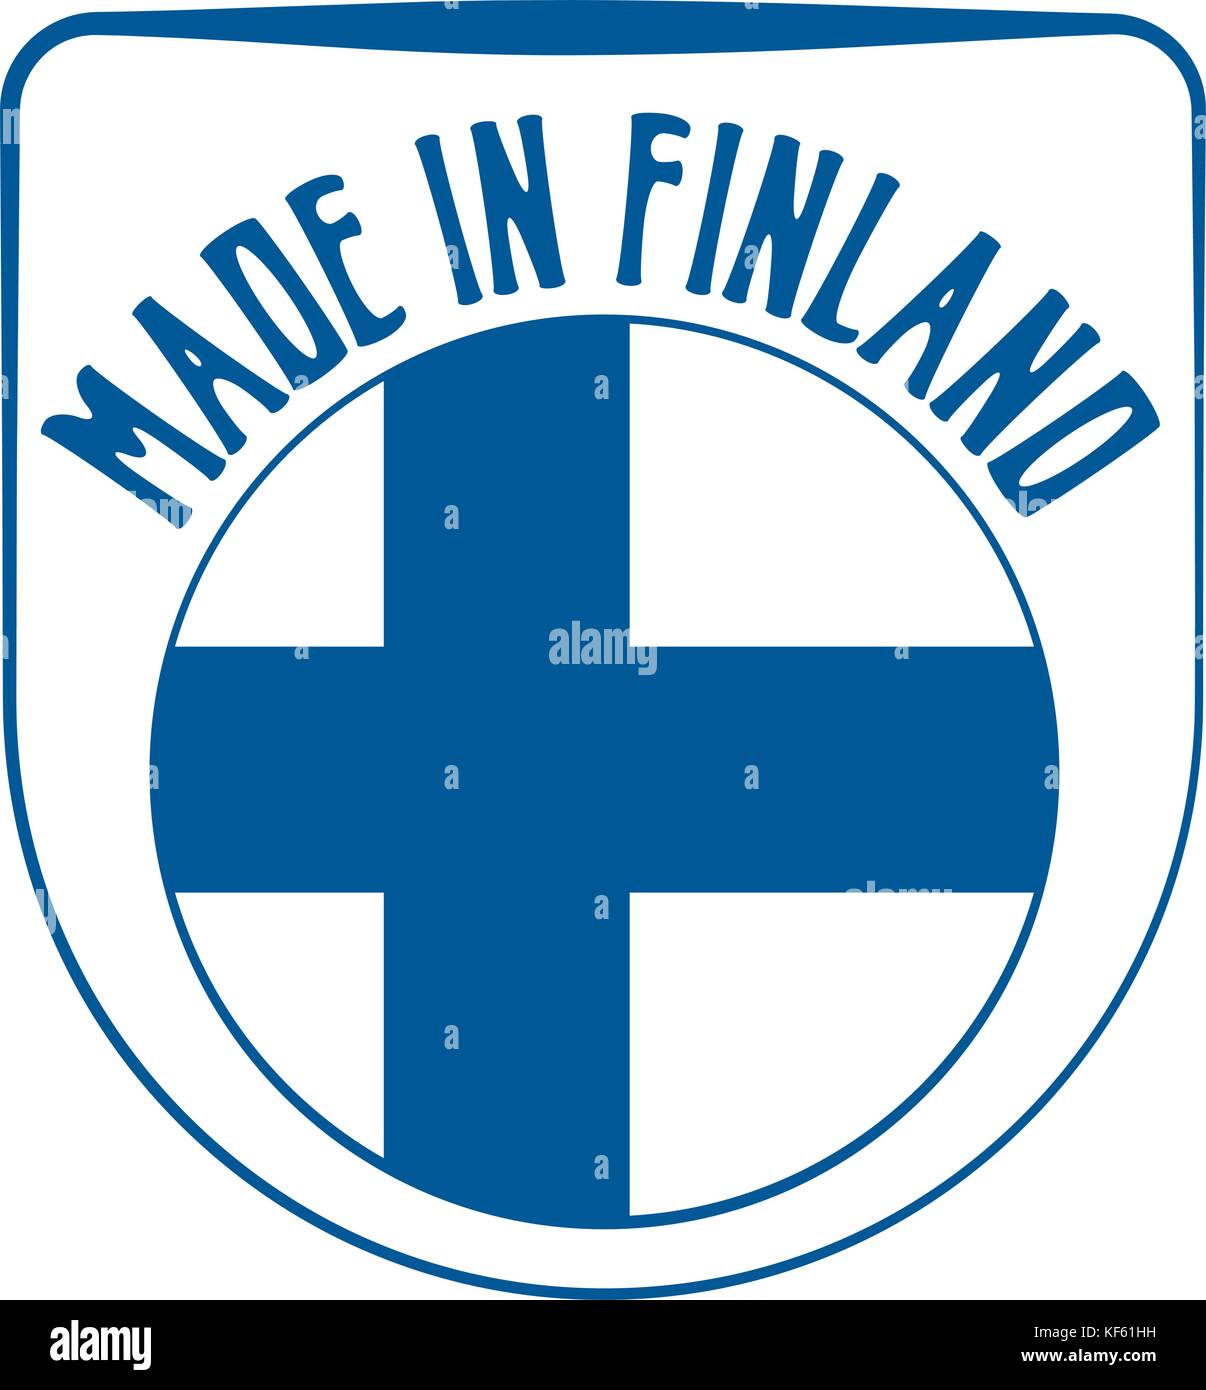 Fabriqué en Finlande sign Illustration de Vecteur